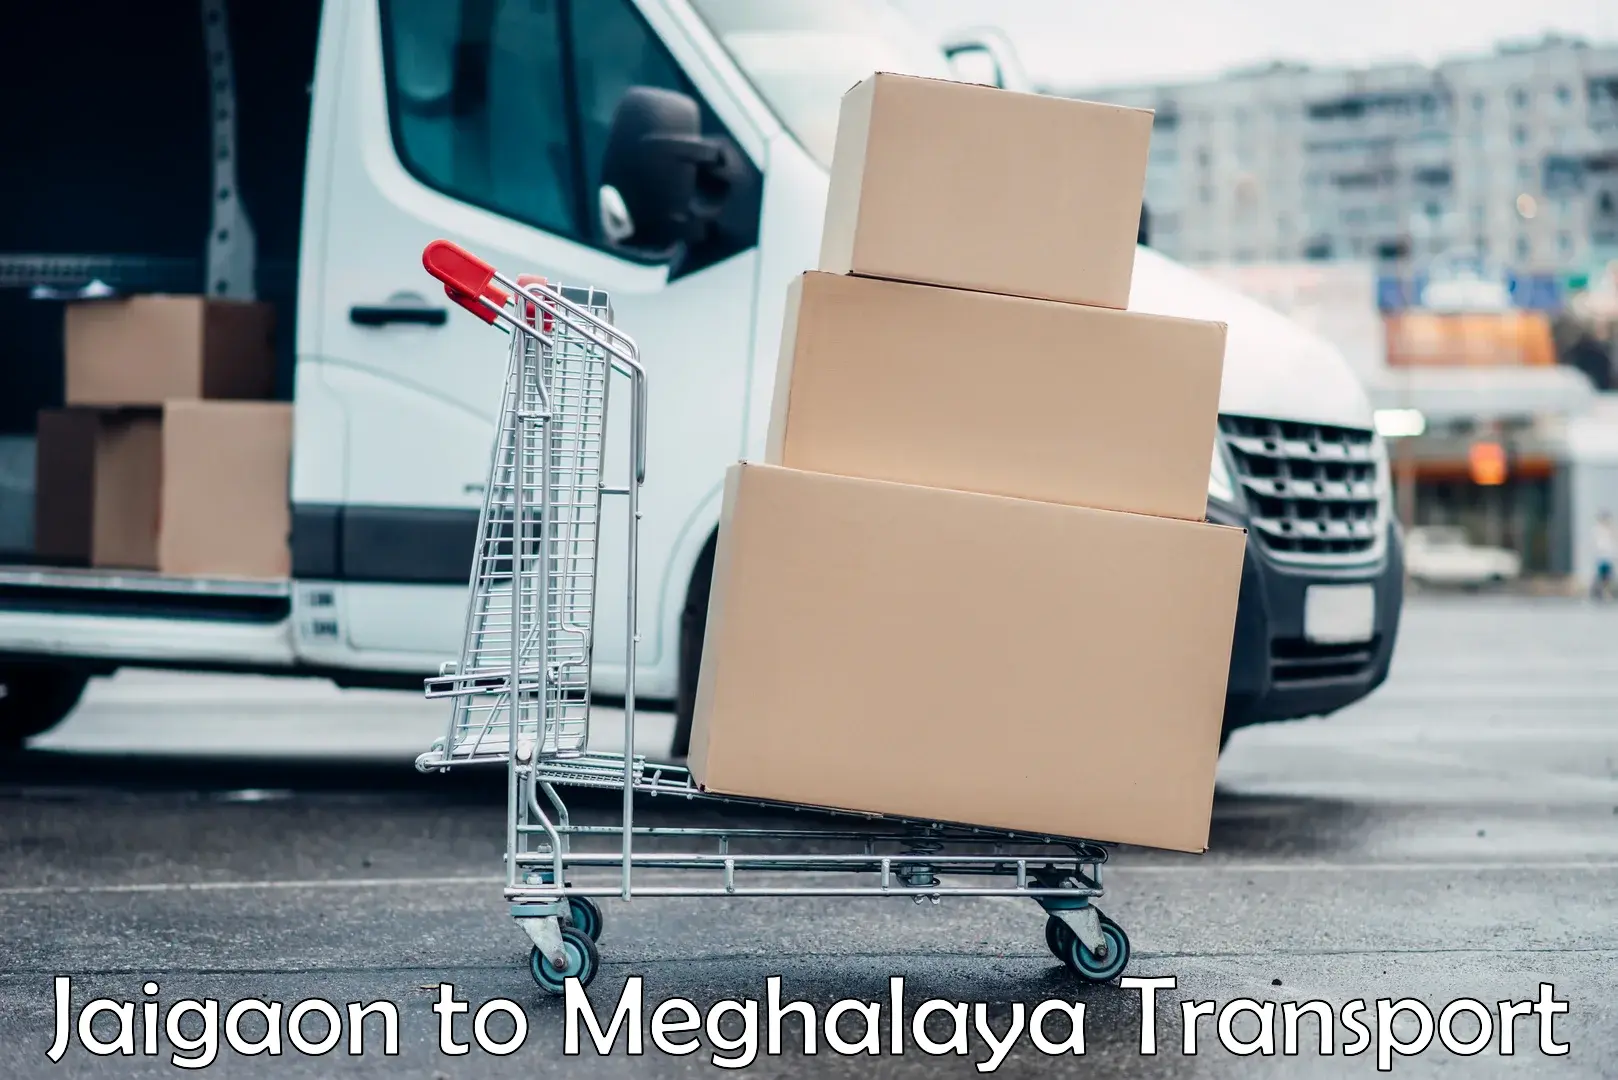 Express transport services Jaigaon to Meghalaya